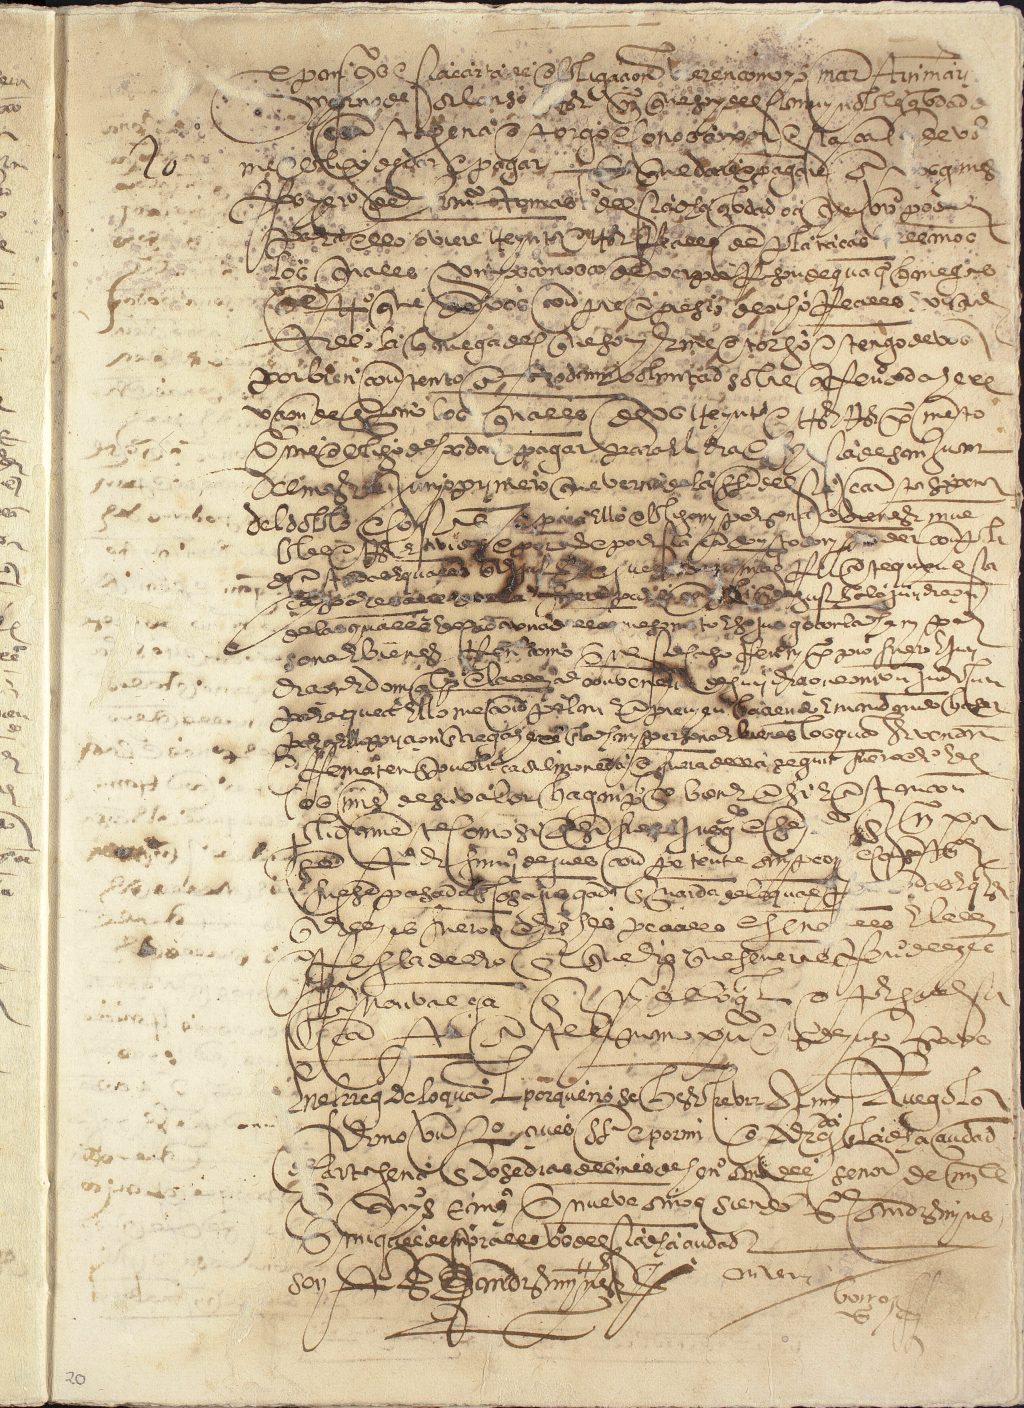 Obligación de pago de Martín Marín, yerno de Alonso, a favor de Ginés Rodríguez, yerno de Francisco Tomás, vecino de Cartagena, por treinta y tres reales de plata castellanos.